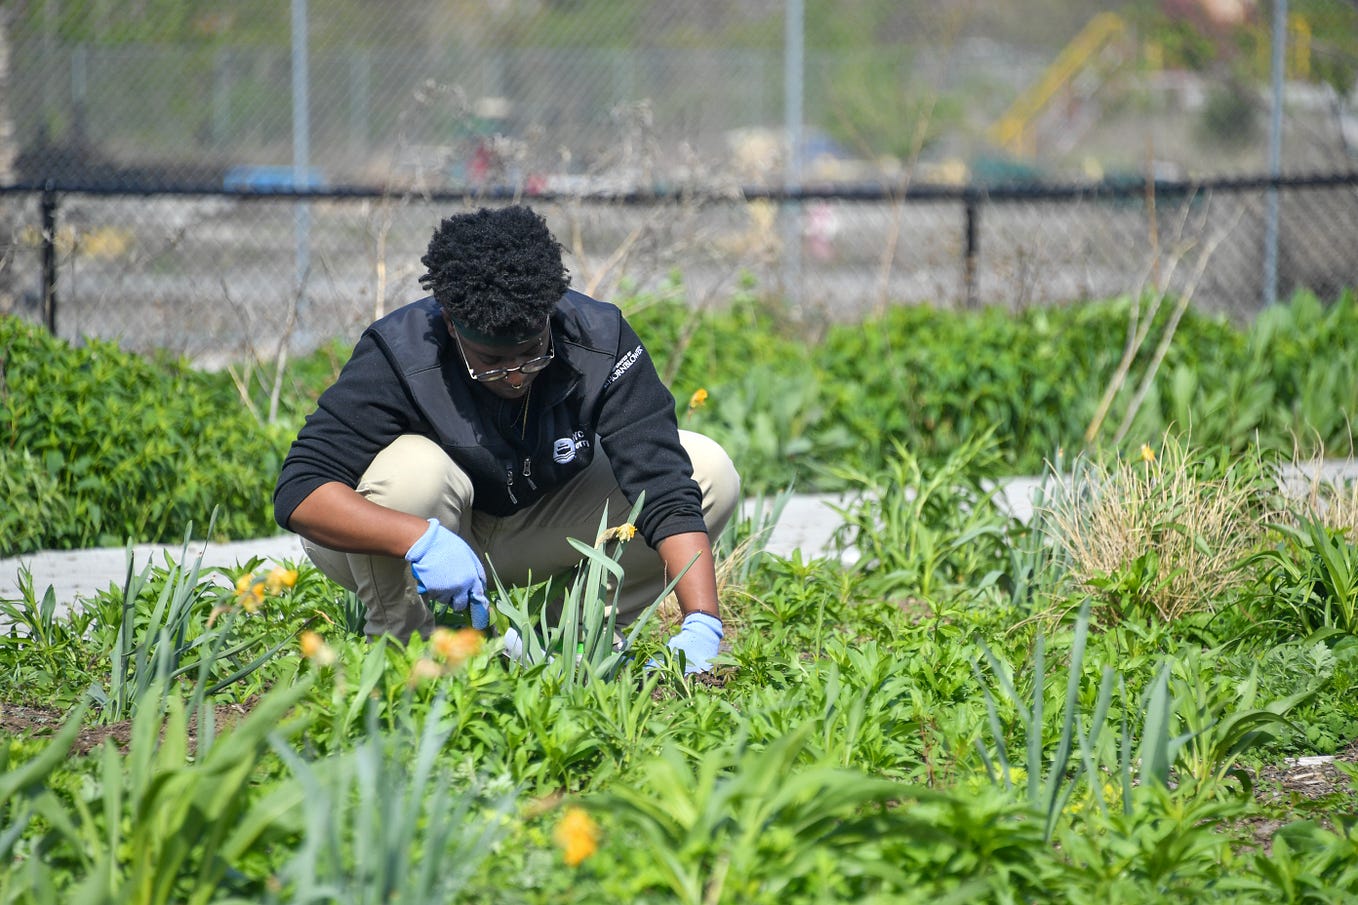 A volunteer kneels to work on plantings at Bushwick Inlet Park